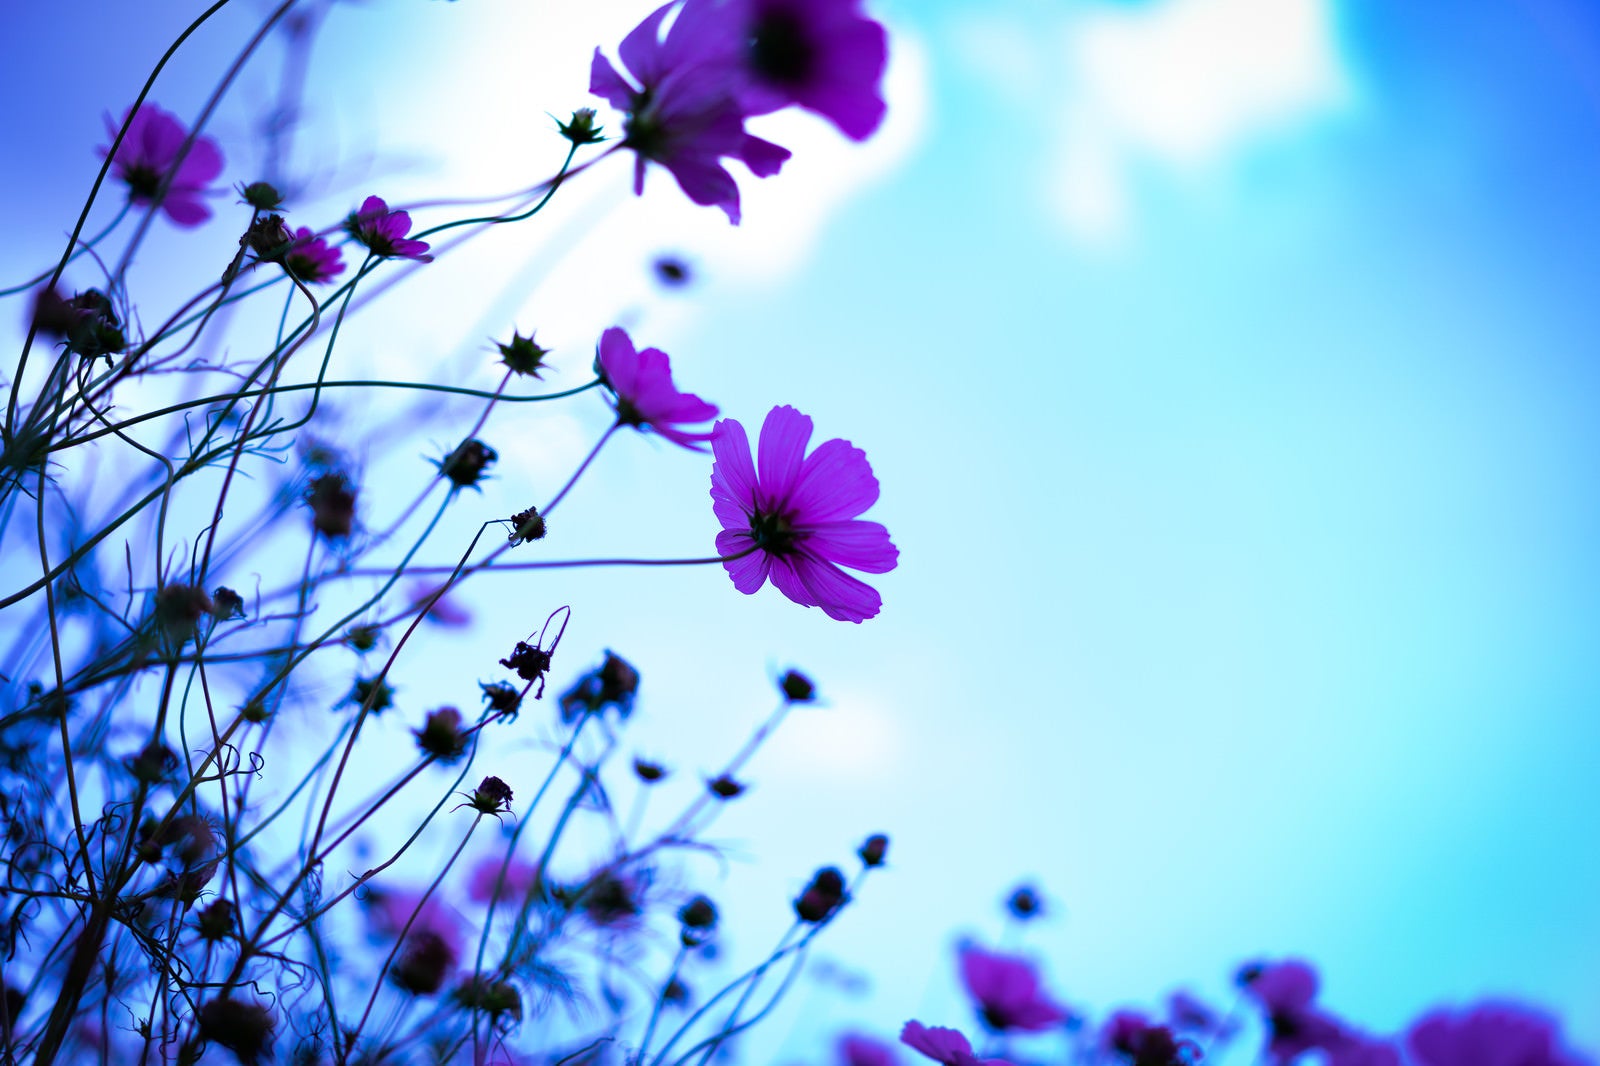 「青空に浮かぶコスモスの花」の写真